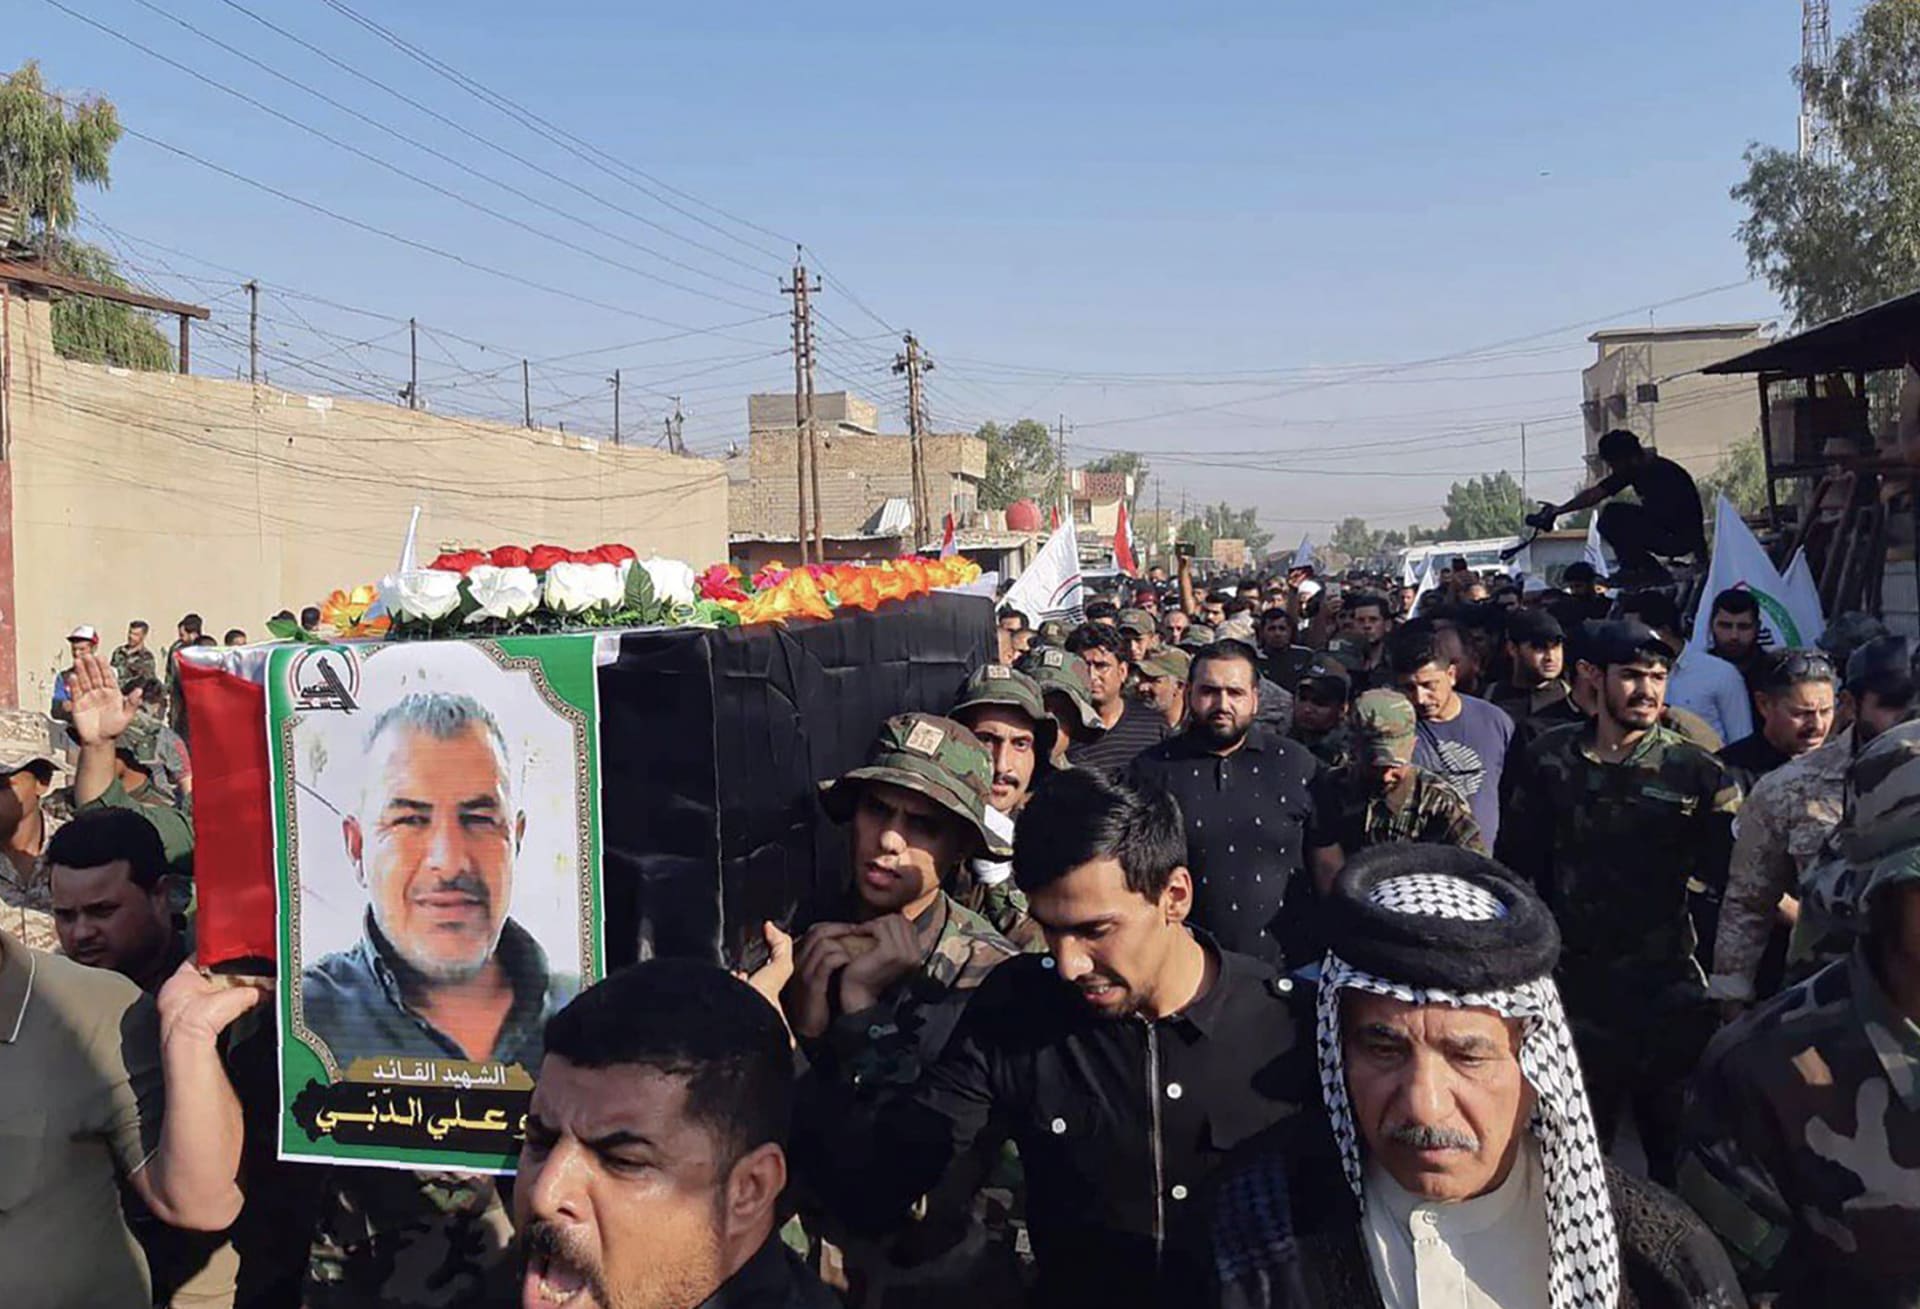 "الحشد الشعبي" العراقي يتهم إسرائيل بقصف مواقعه مع "غطاء أمريكي"